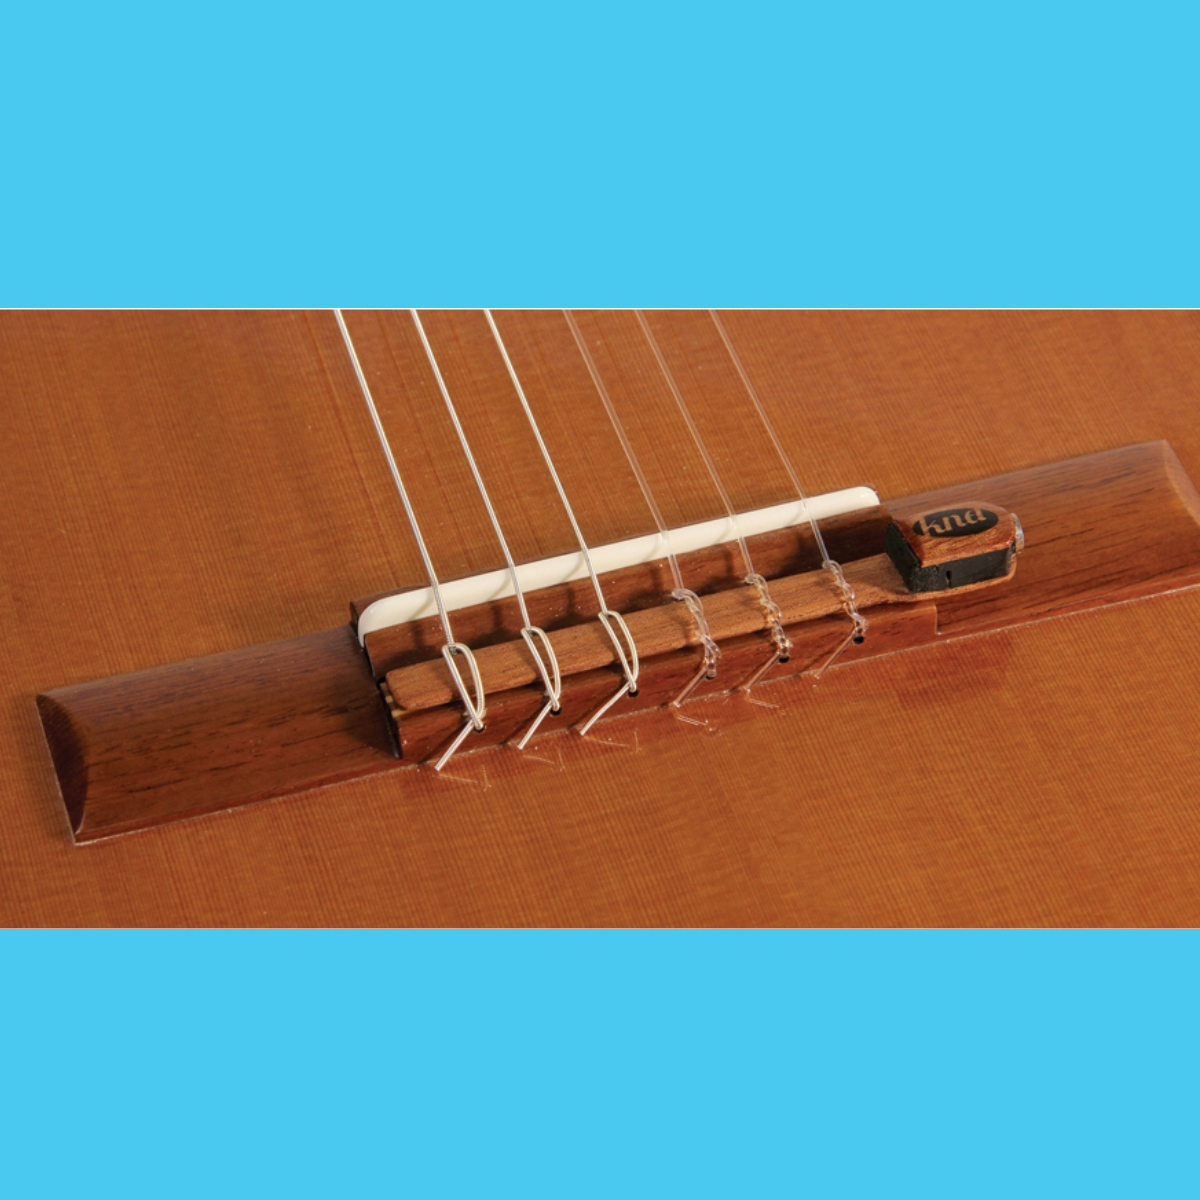 Classical Guitar Pickup (KNA NG-1)